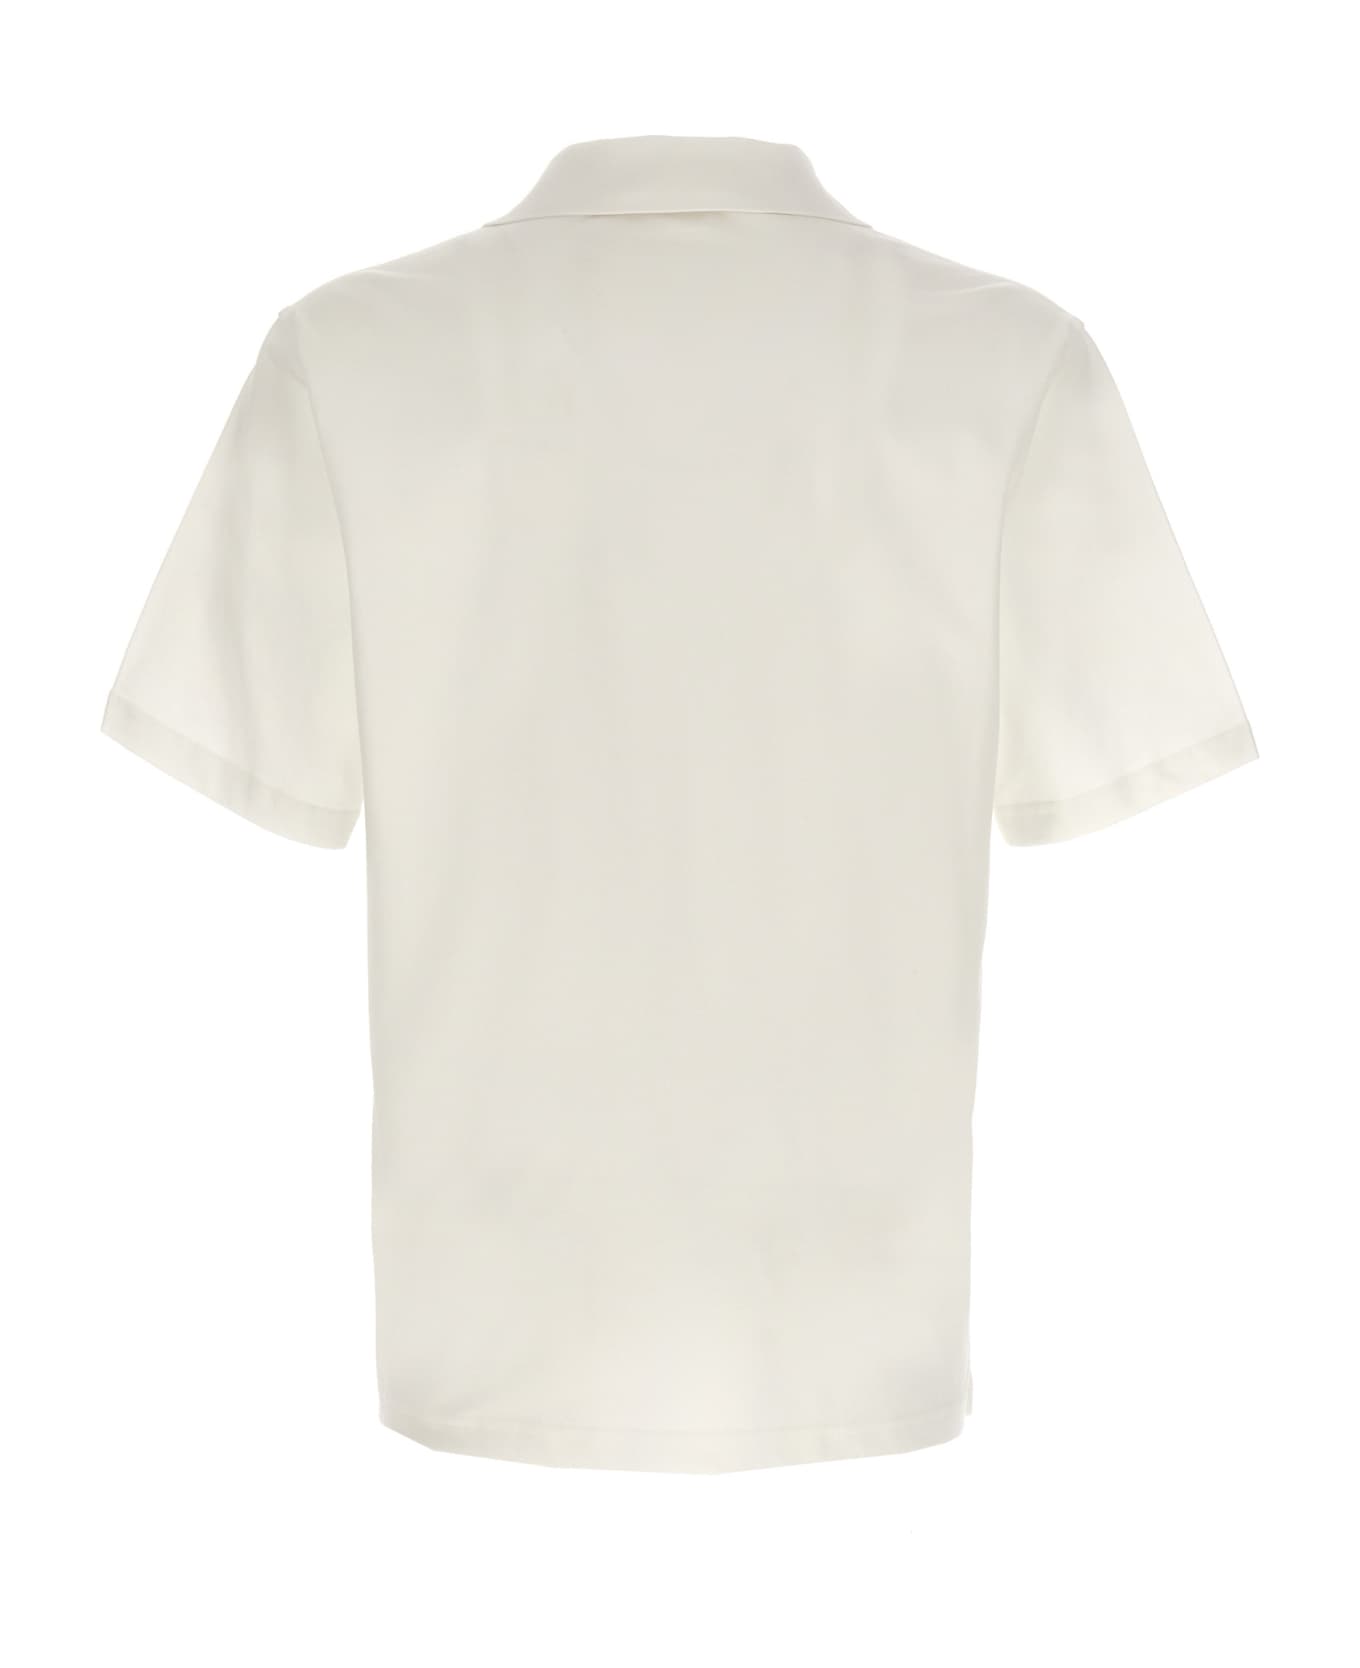 Lanvin Logo Polo Shirt - White ポロシャツ